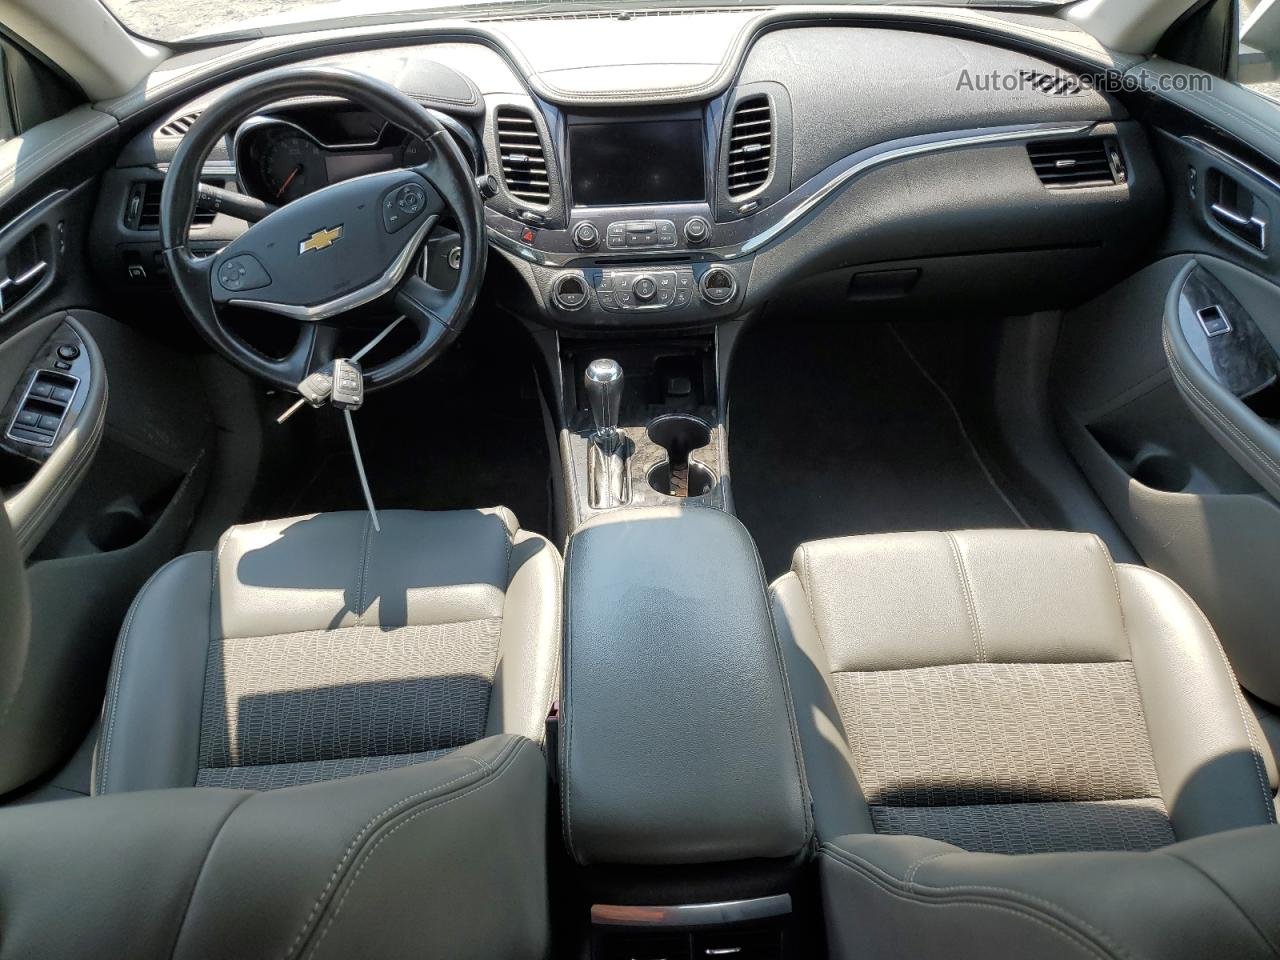 2014 Chevrolet Impala Lt Белый vin: 2G1125S39E9106388